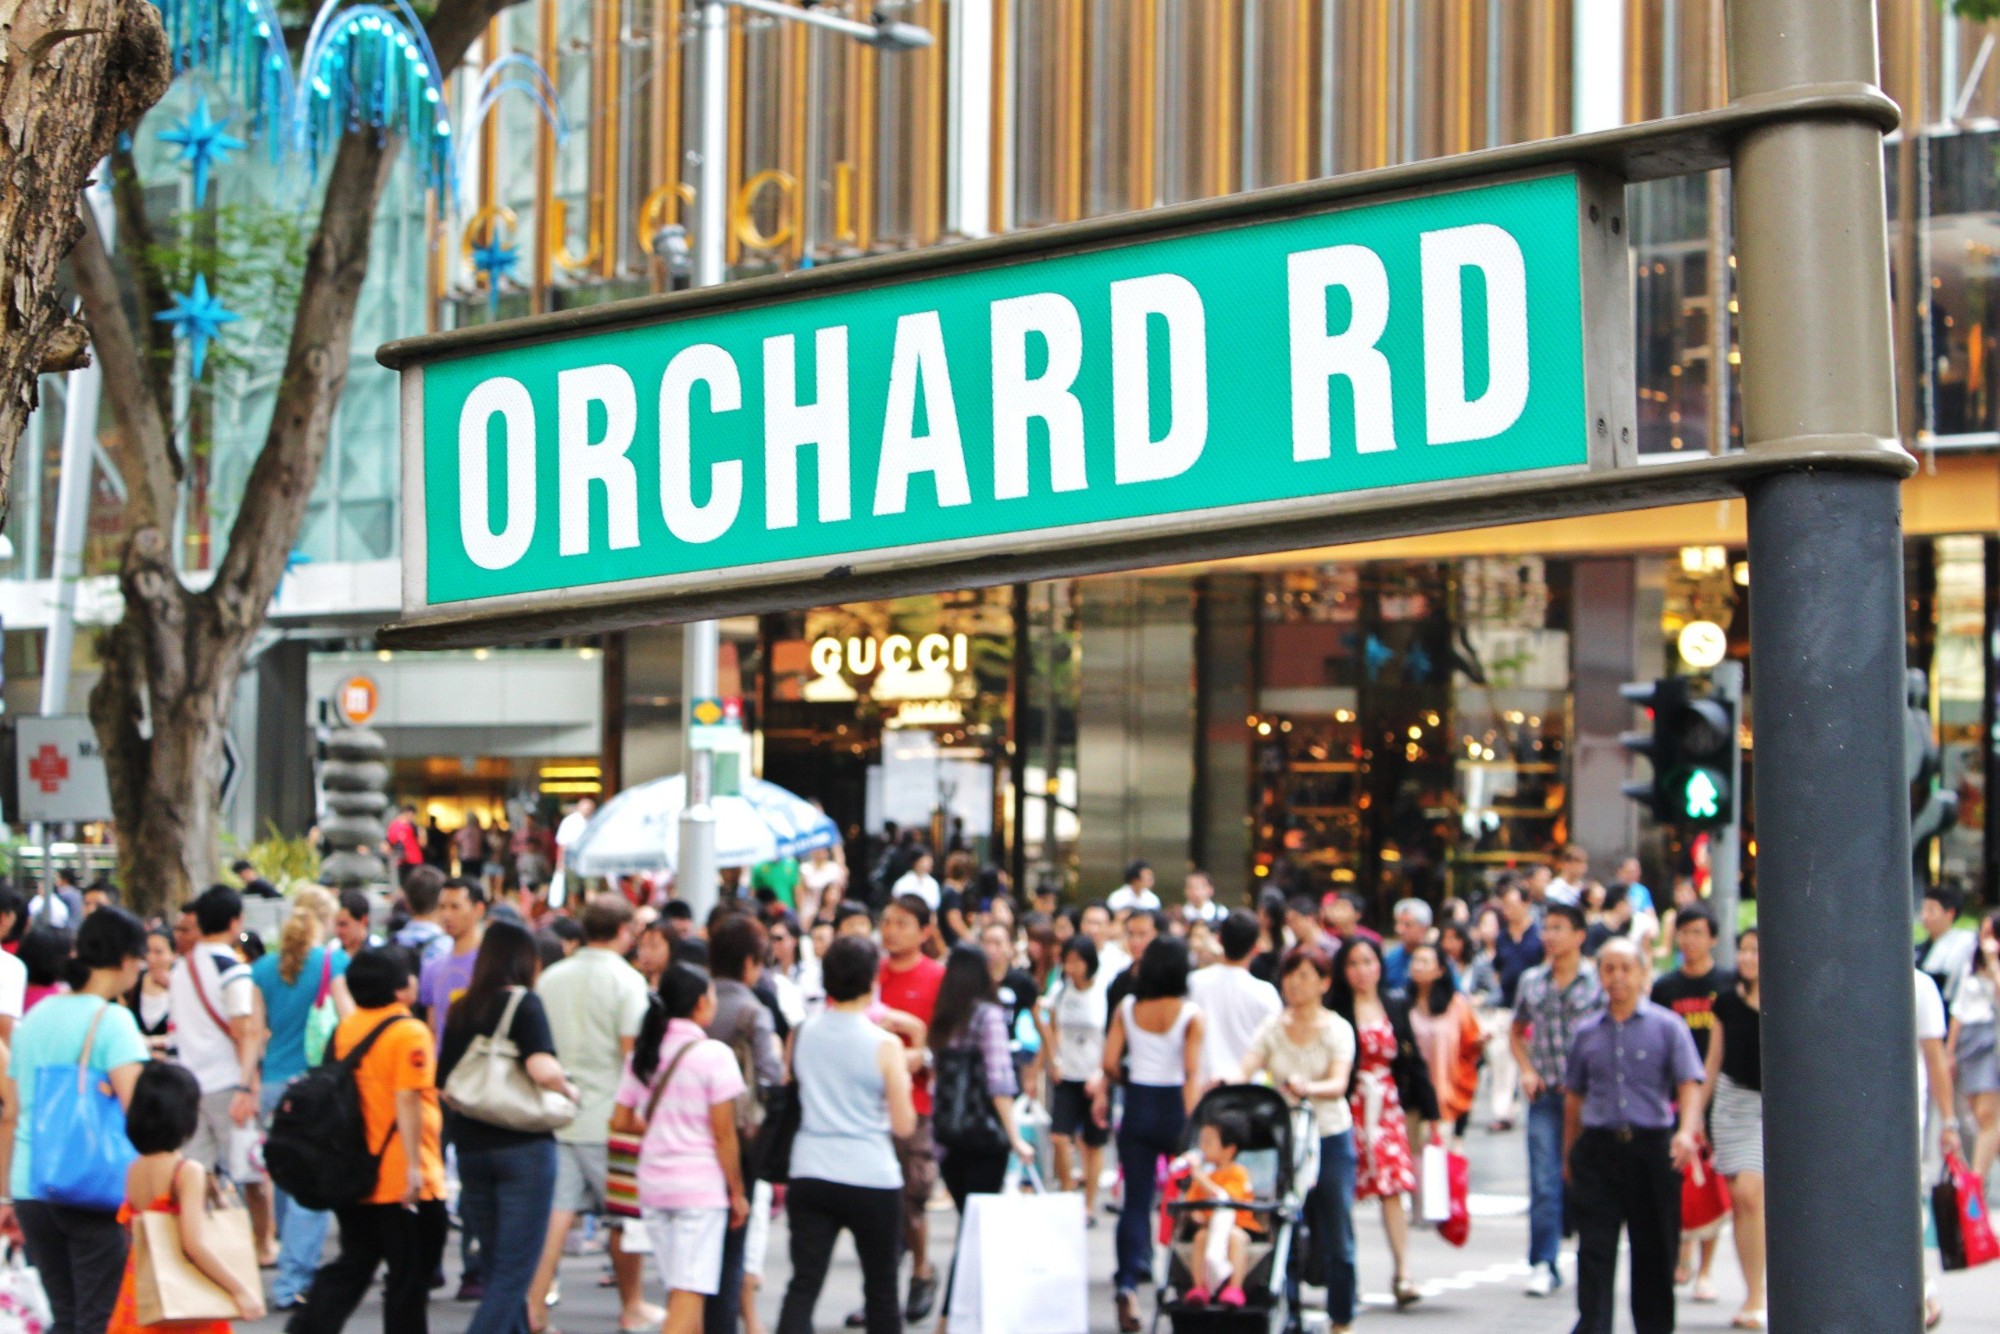 Orchard RD - nơi hội tụ các khu mua sắm ở Singapore 